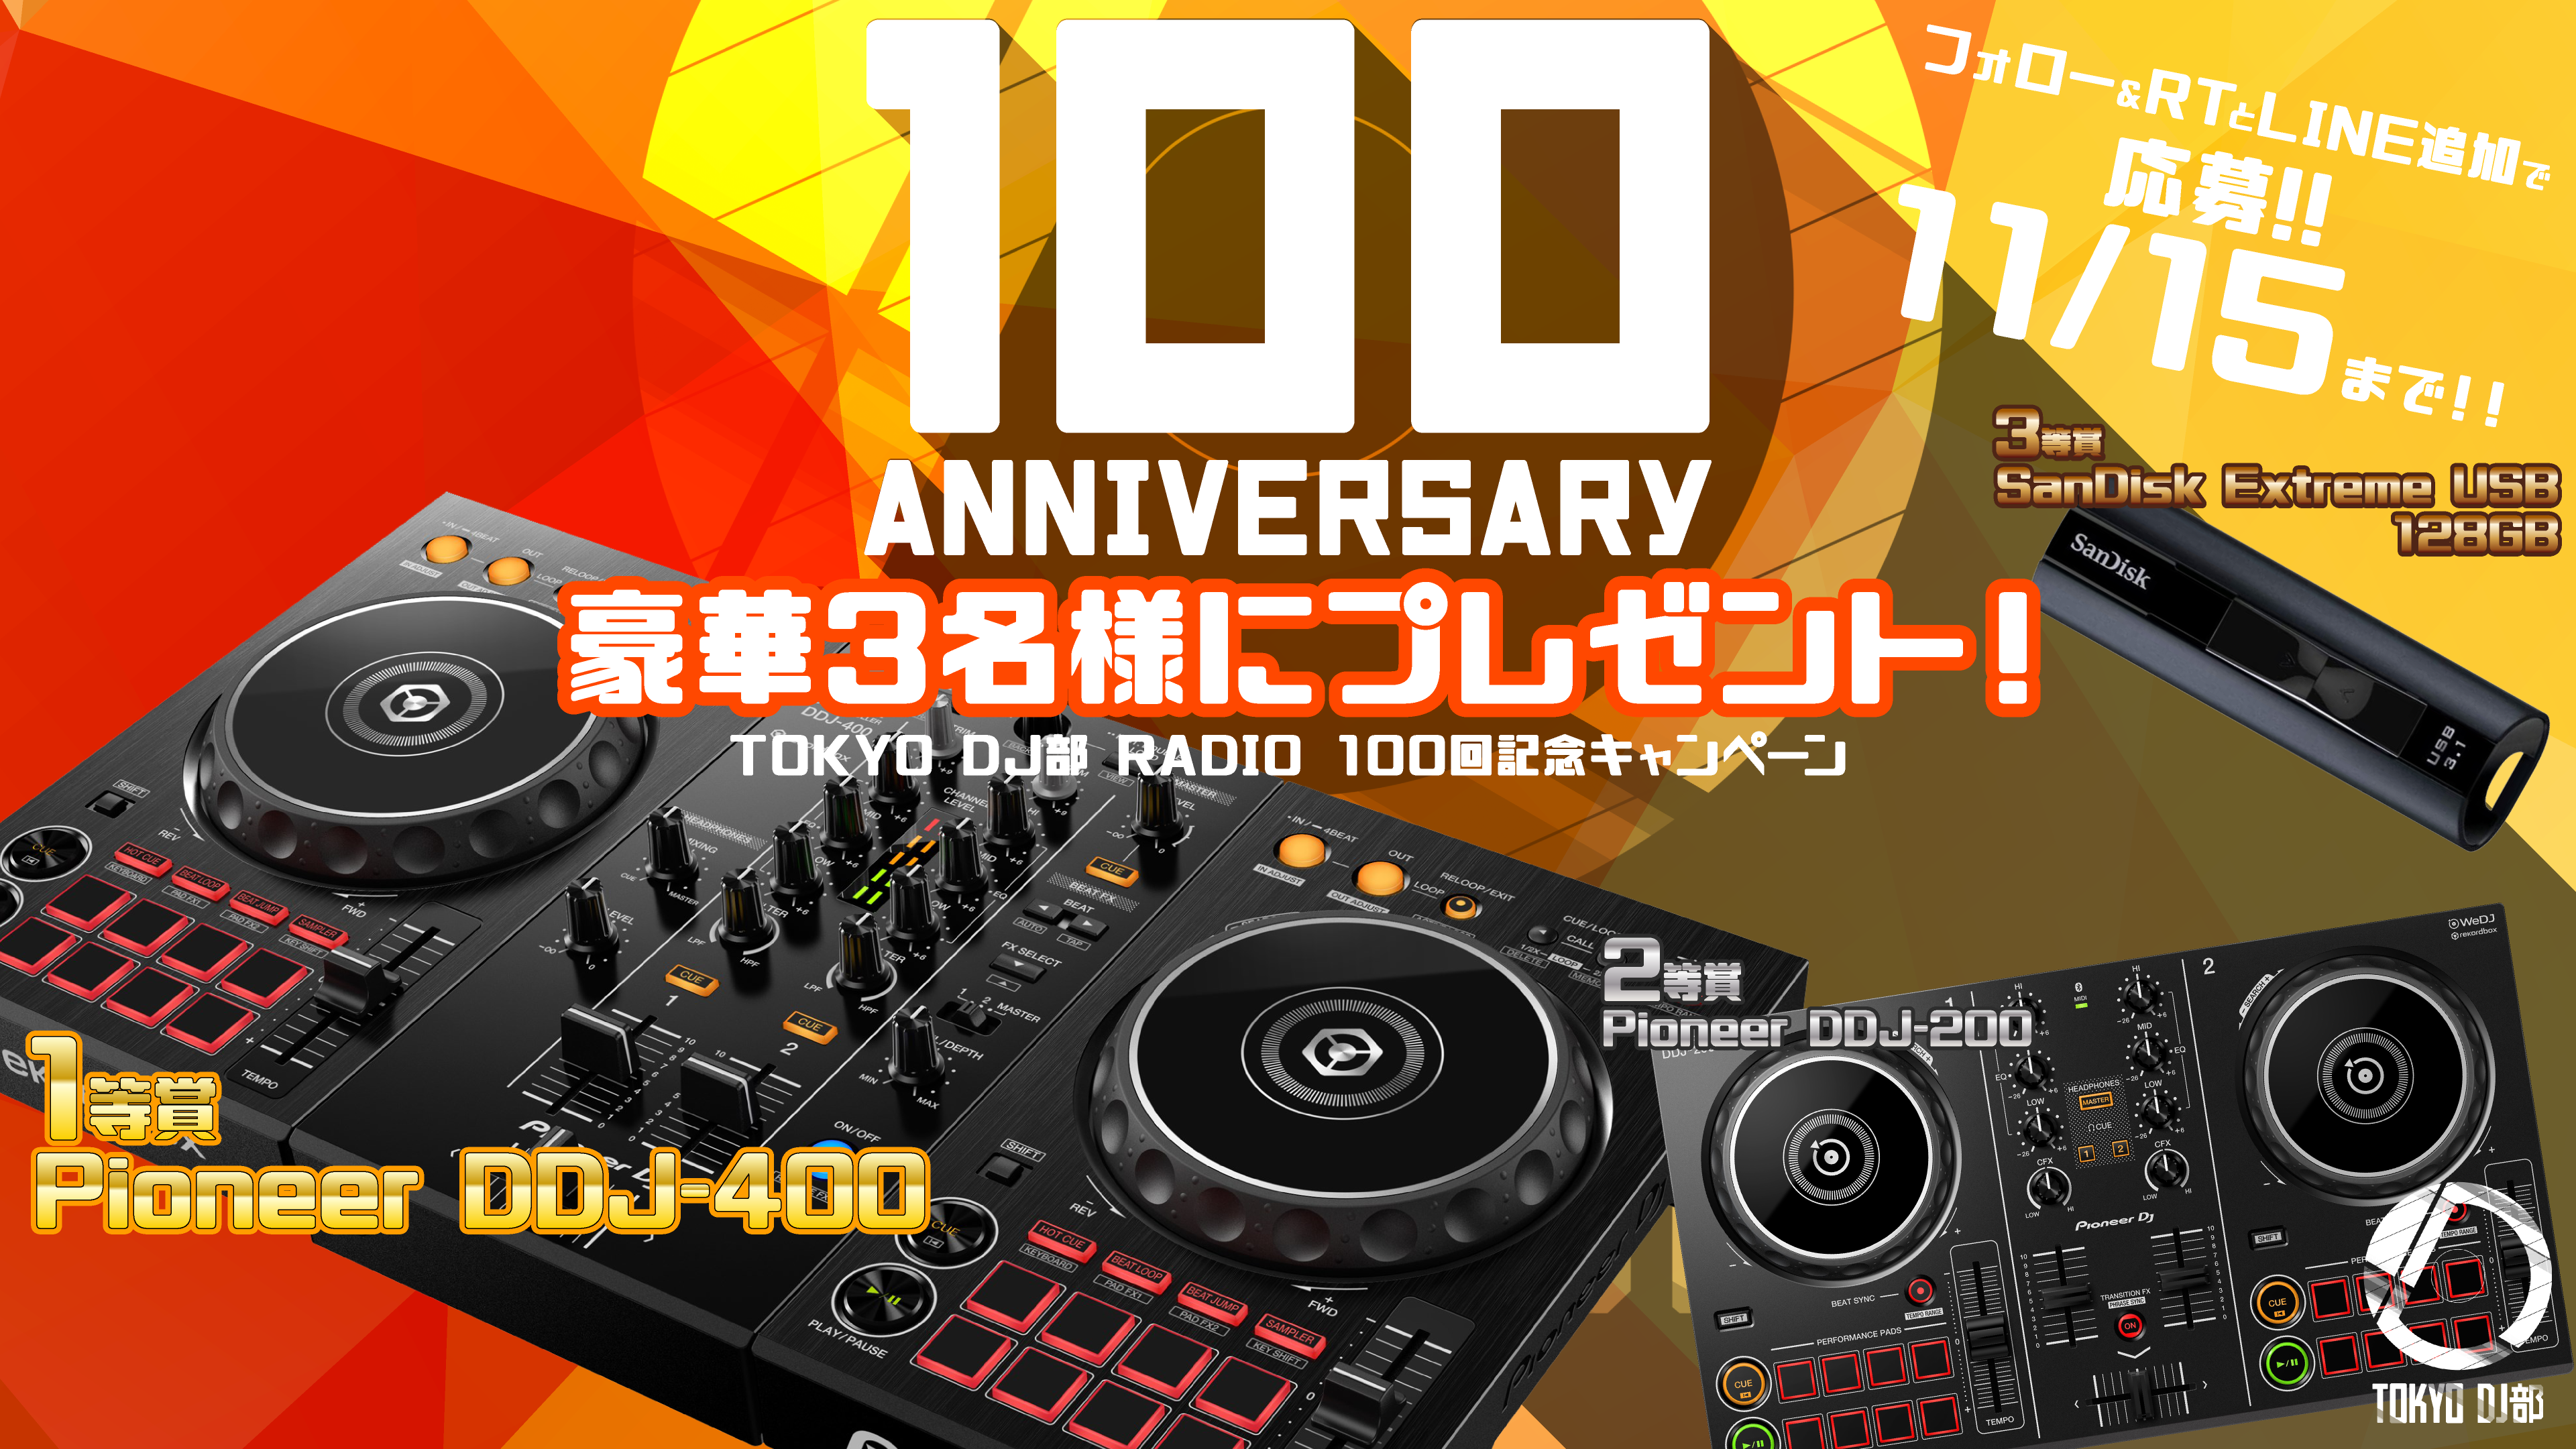 3名様に当たる】Pioneer DDJ-400他 DJ機材・グッズプレゼント – TOKYO DJ部